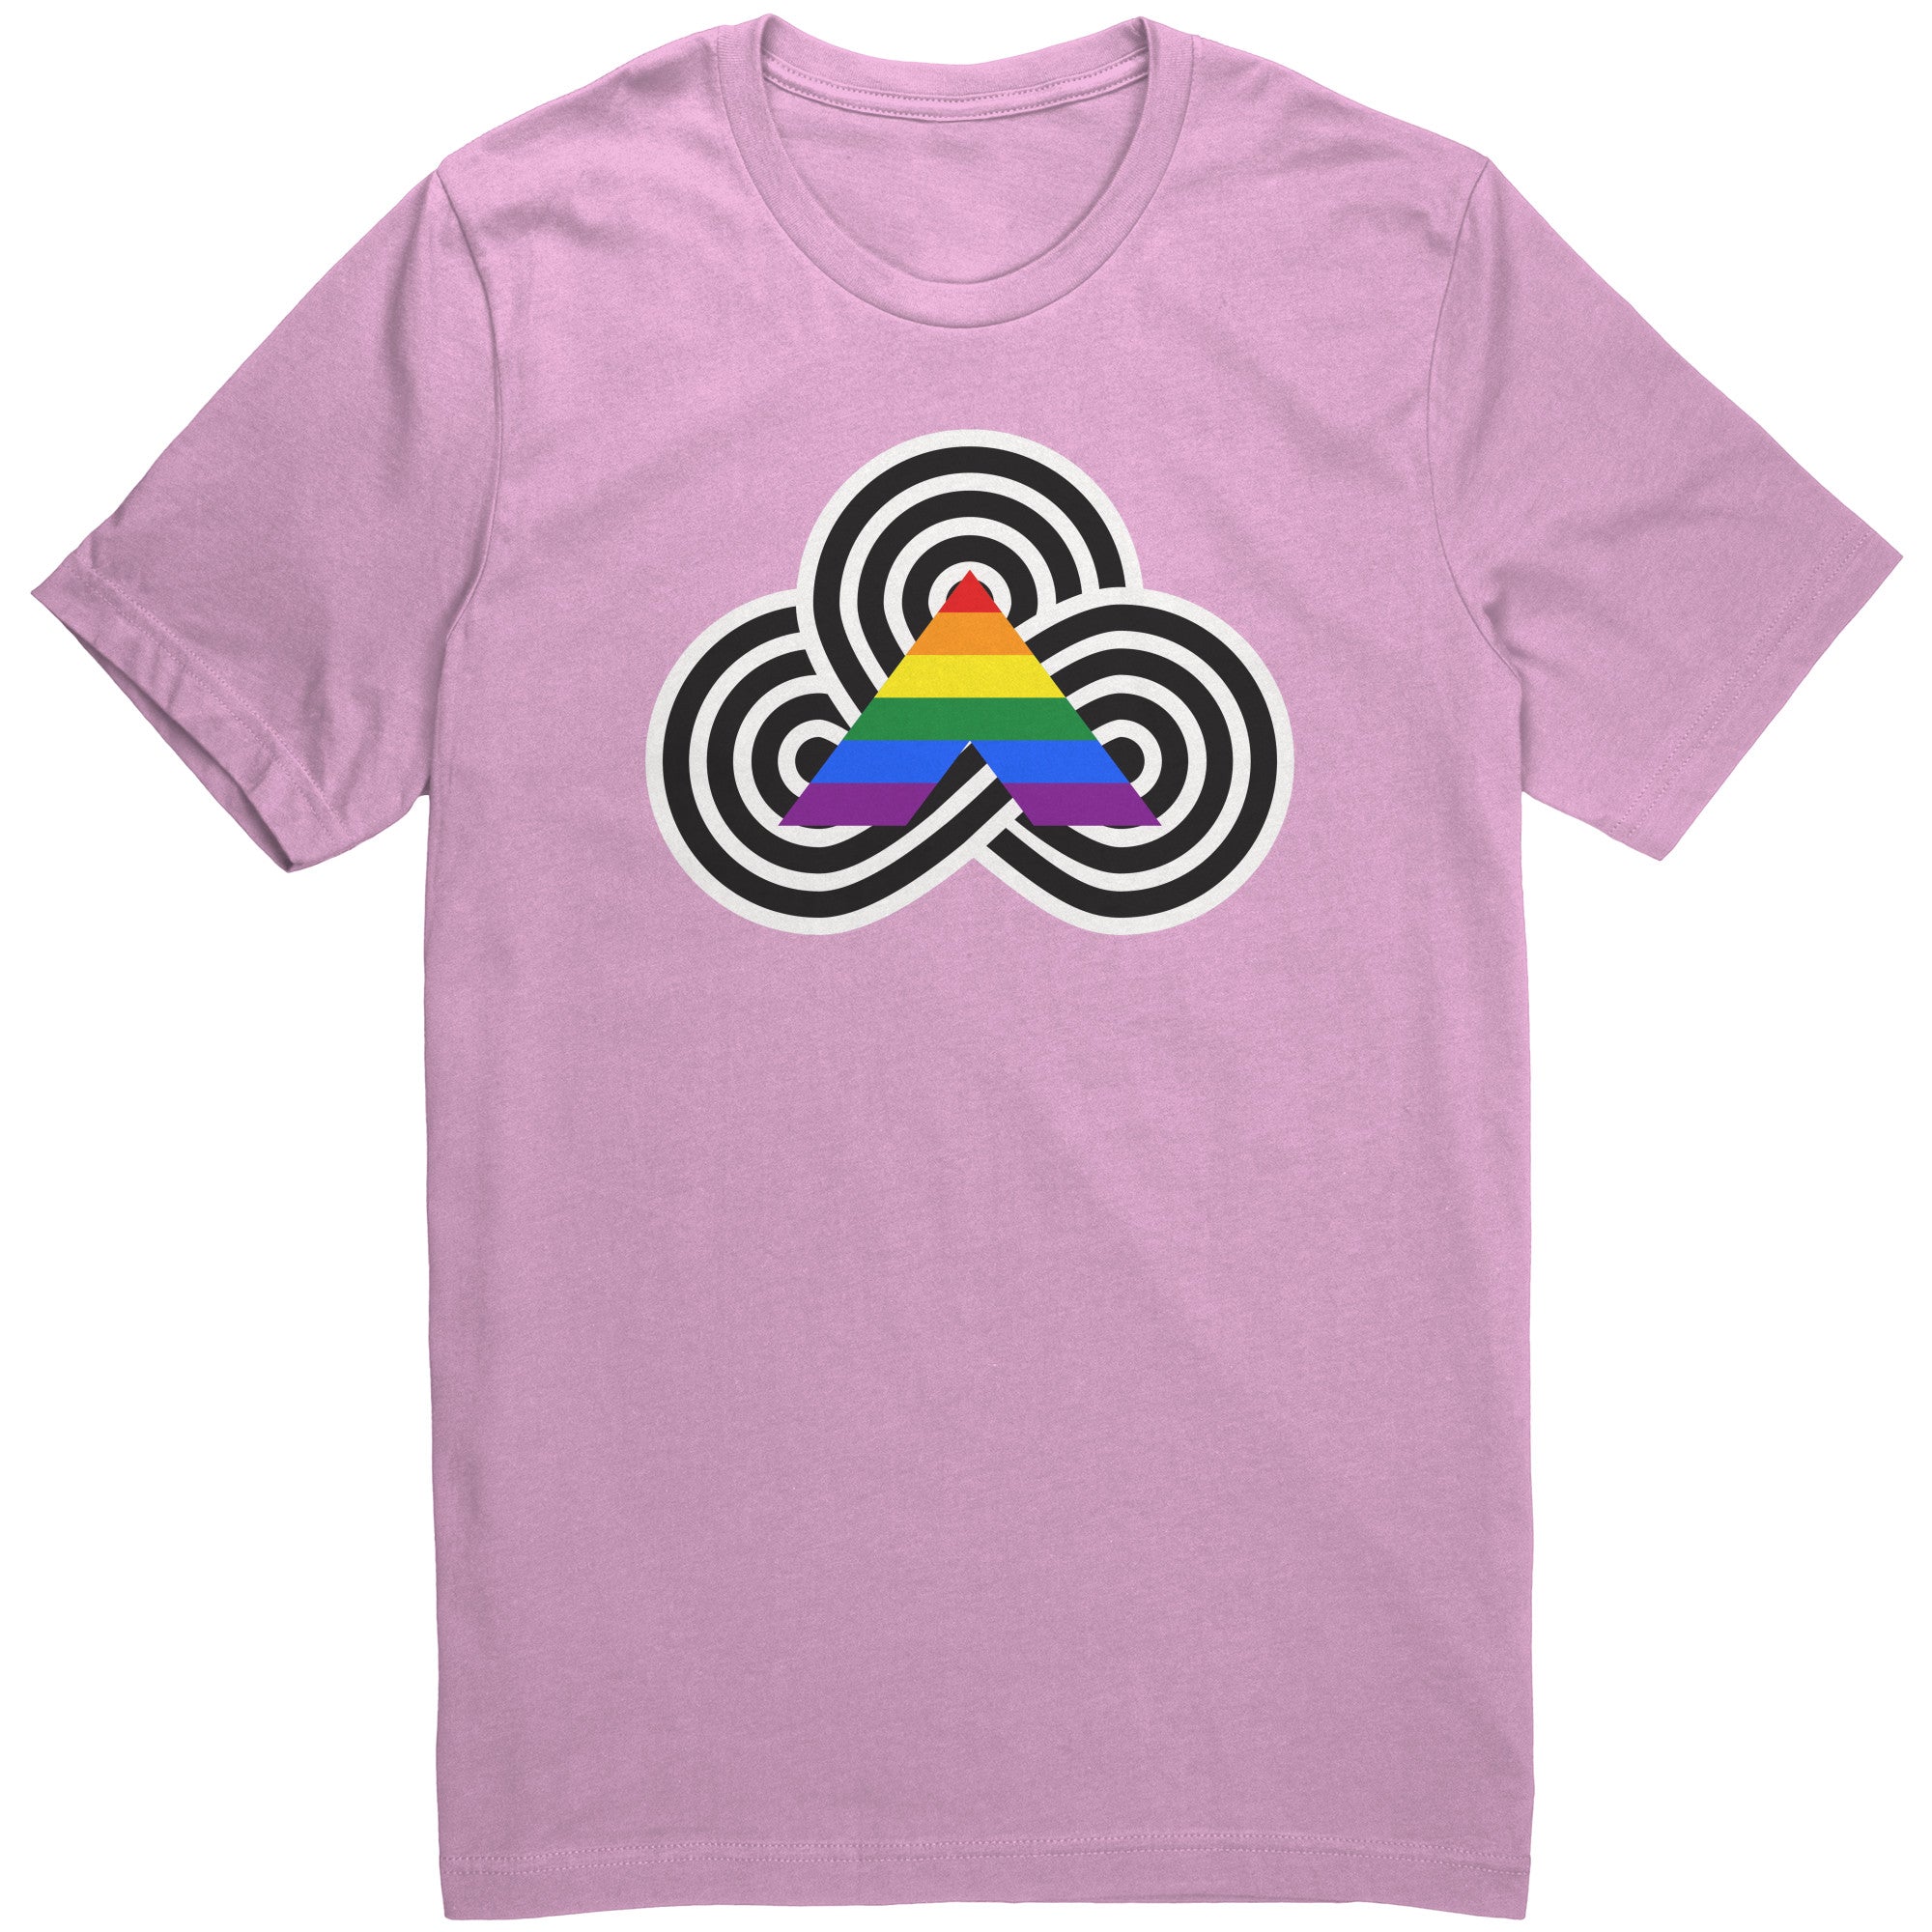 Straight Ally T-Shirt Pride LGBTQIA+ Pride Month